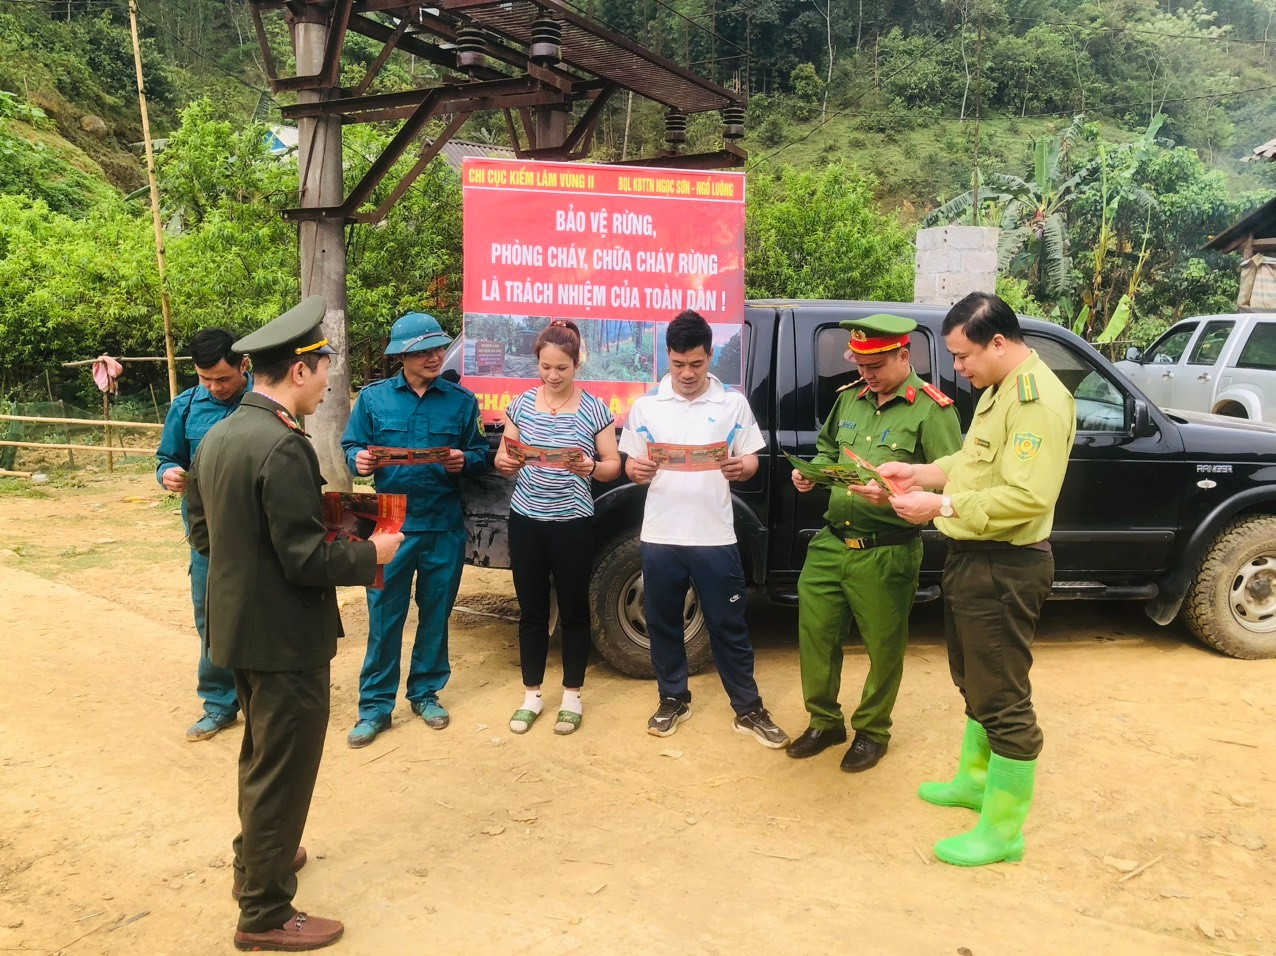 Tăng cường công tác tuyên truyền về quản lý bảo vệ rừng, phòng cháy, chữa cháy rừng và bảo vệ động vật hoang dã tại Ban quản lý Khu bảo tồn thiên nhiên Ngọc Sơn – Ngổ Luông.